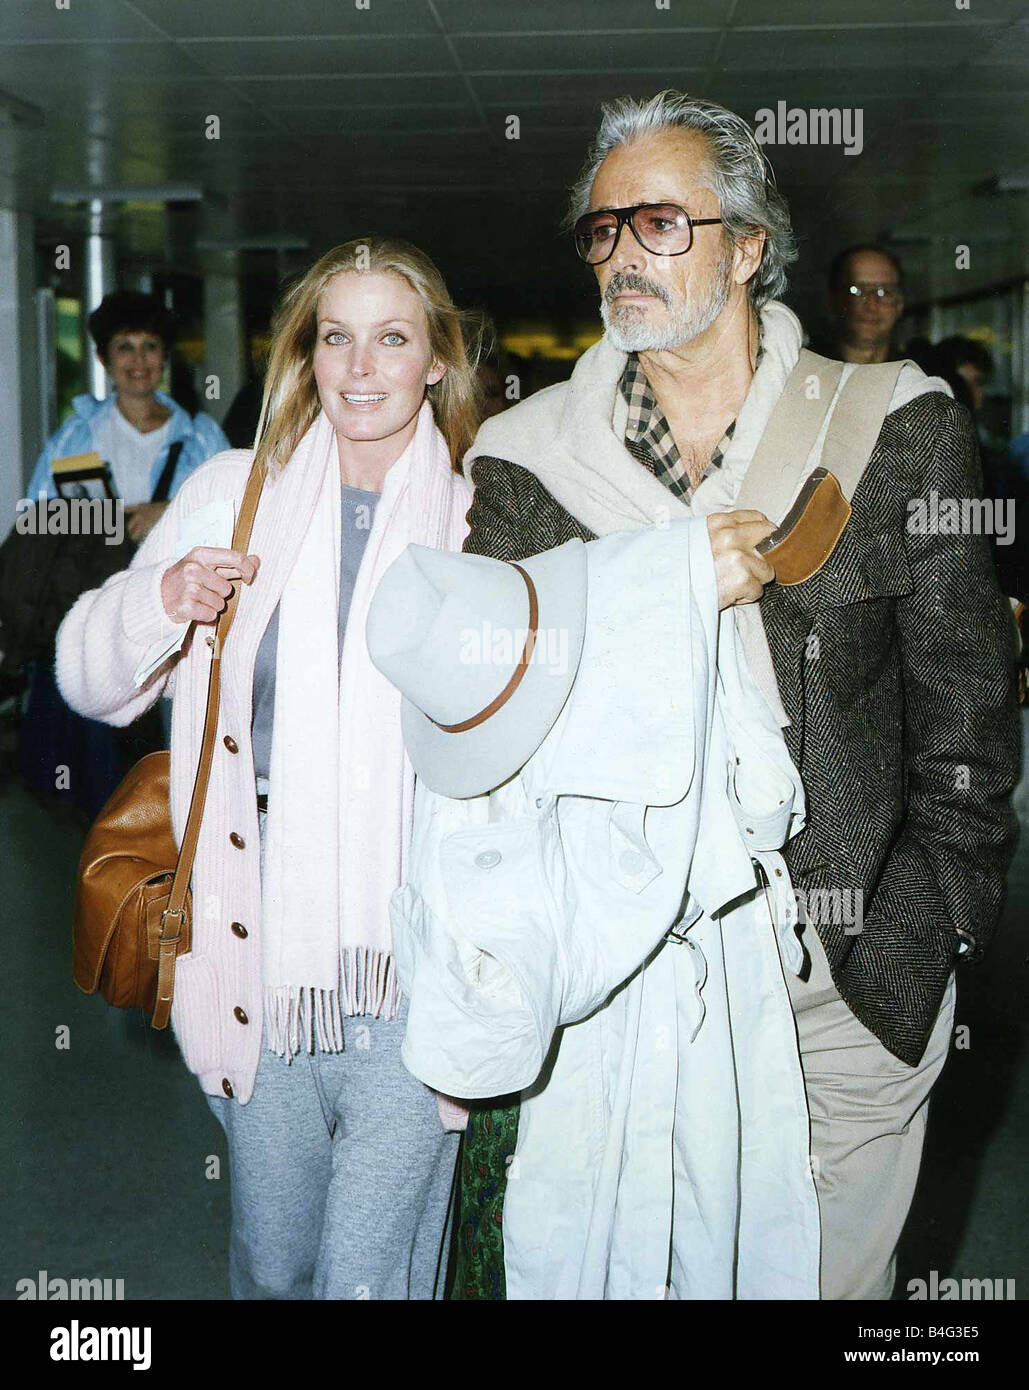 Bo Derek actress with husband John at airport Stock Photo